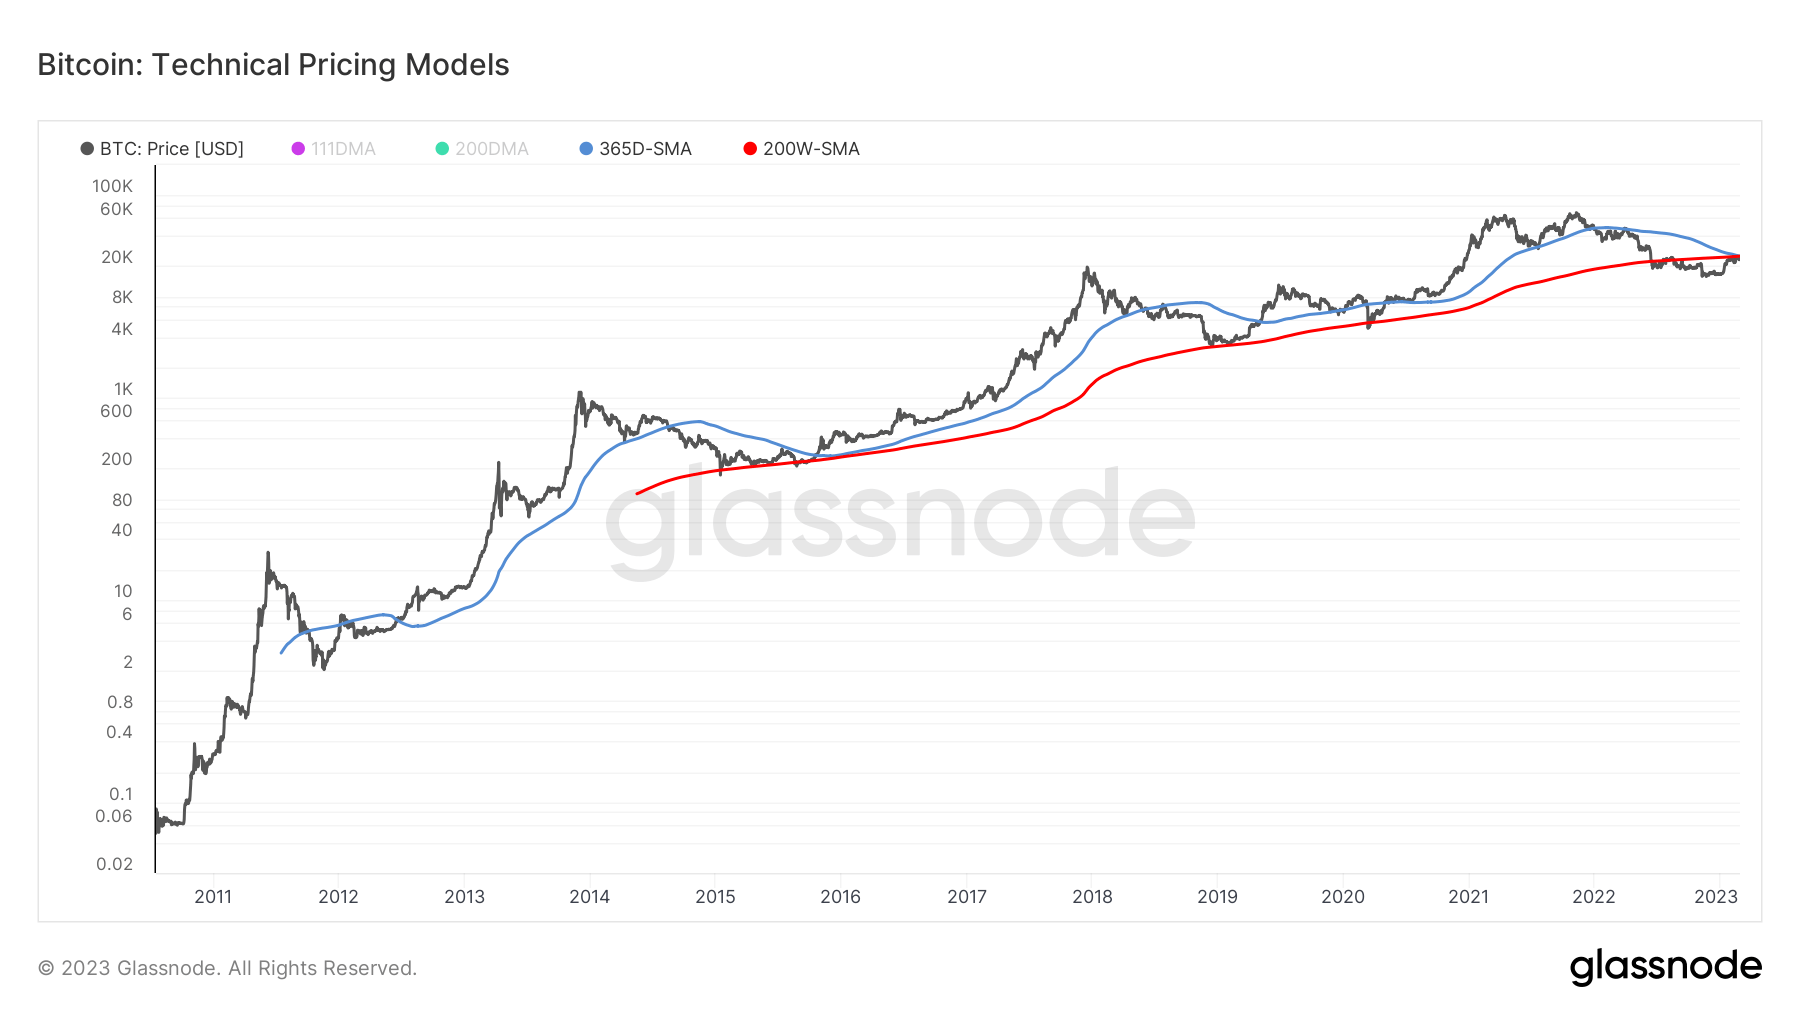 Pricing Models: (Source: Glassnode)